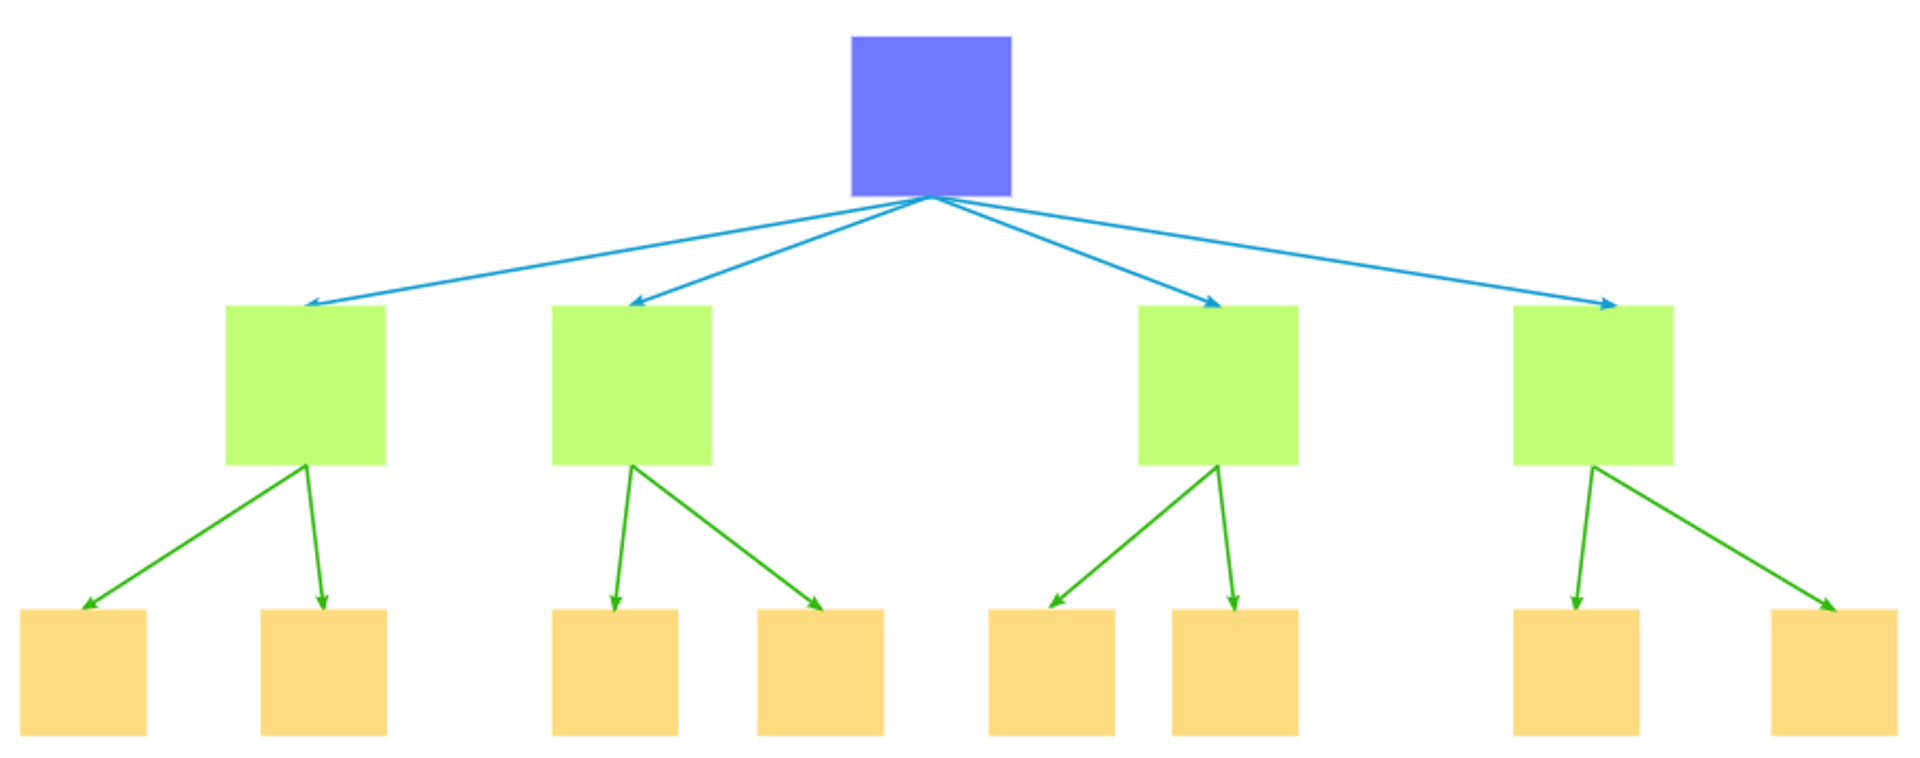 Hierarchal Model